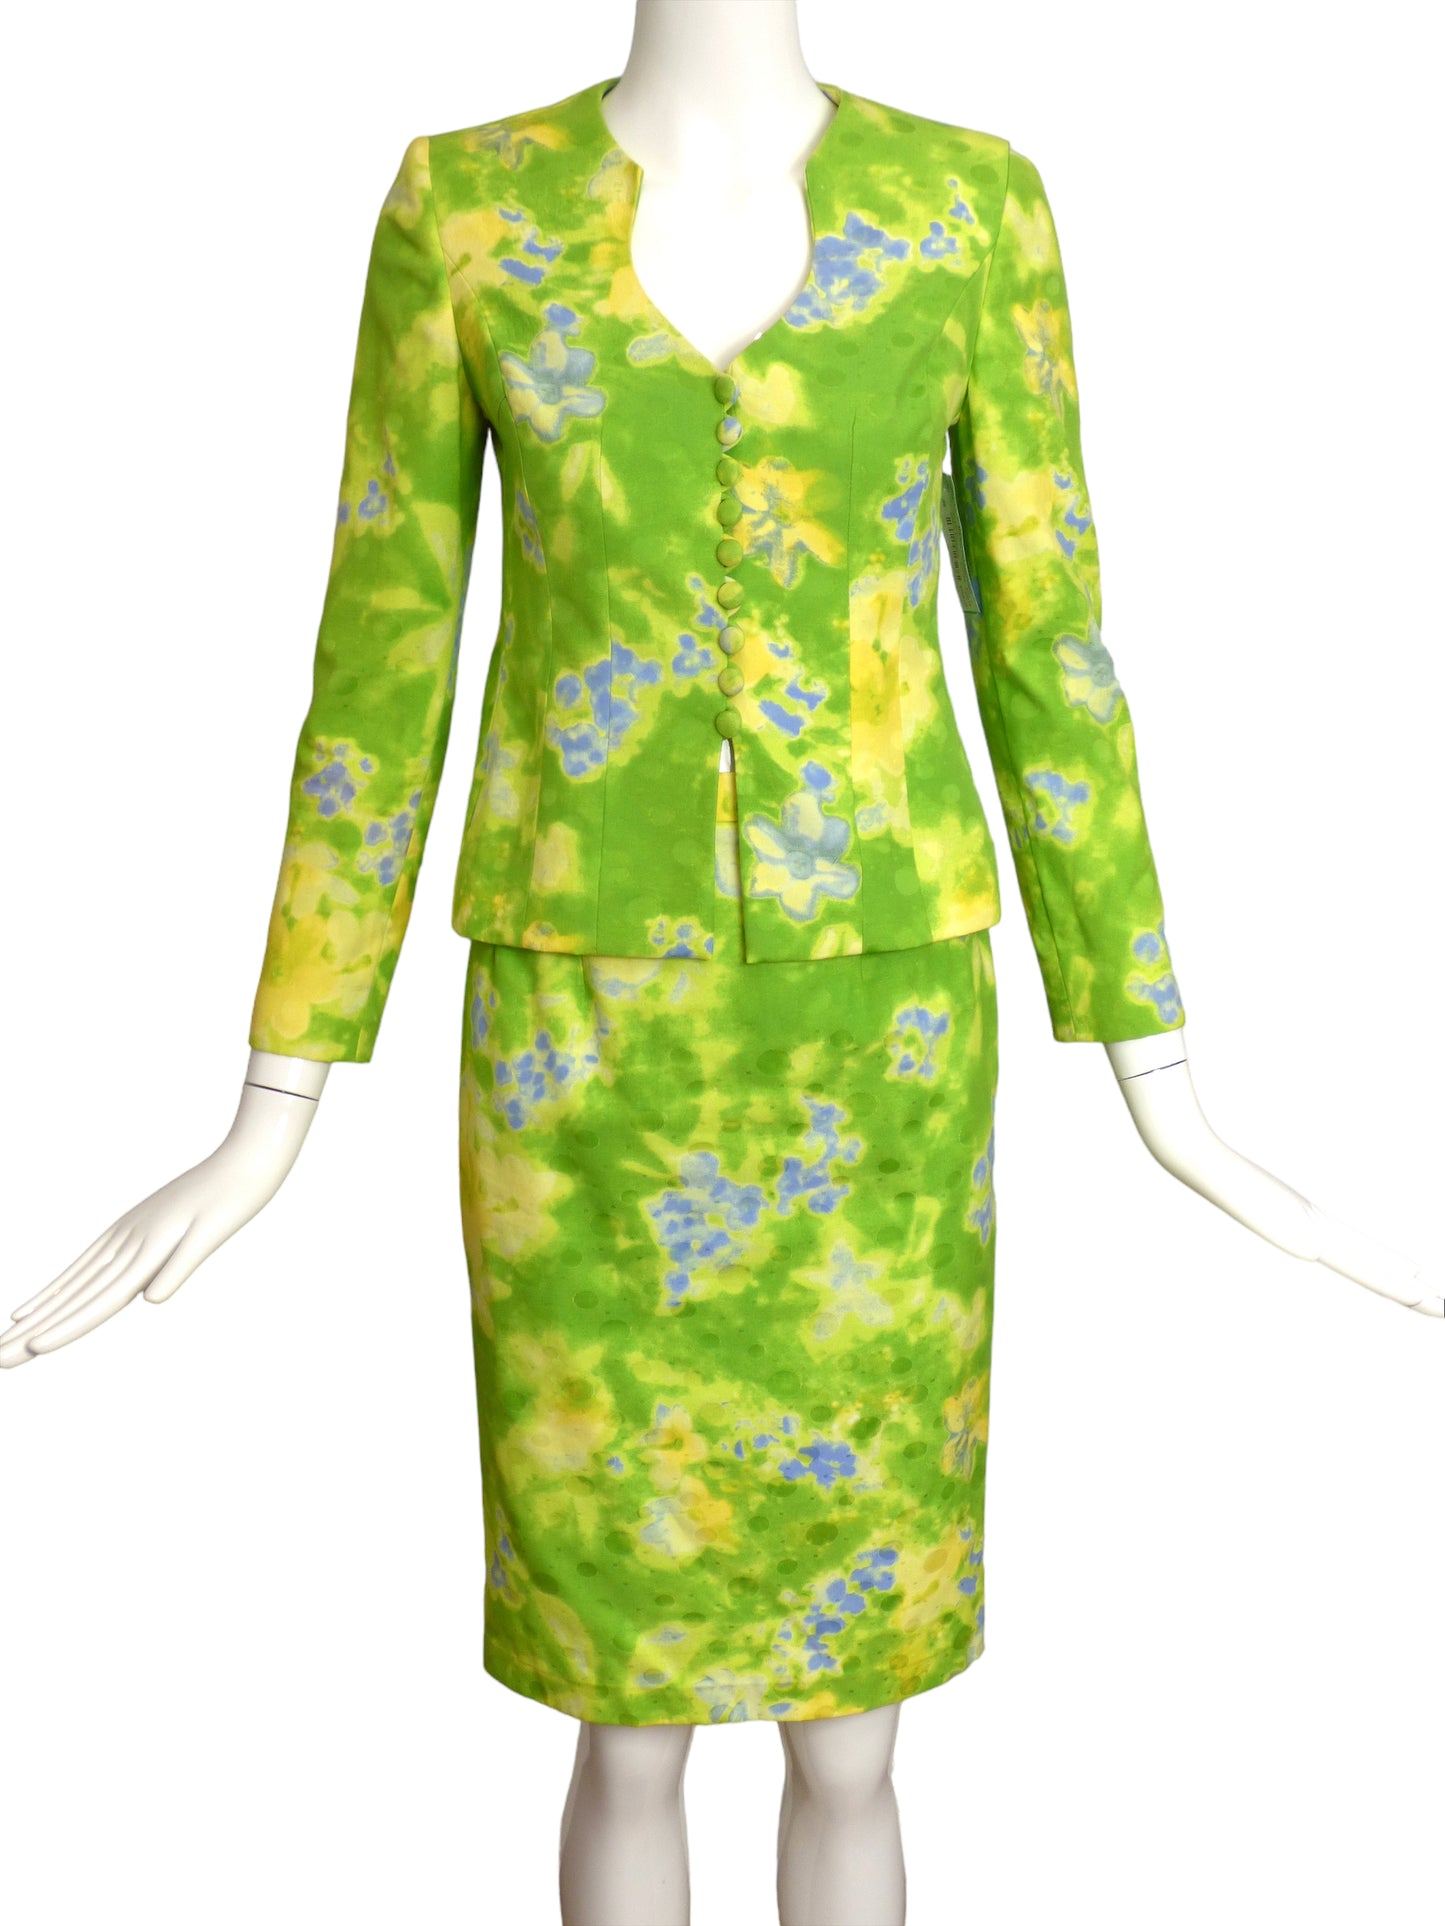 FE ZANDI-Floral Cotton Suit, Size-4P